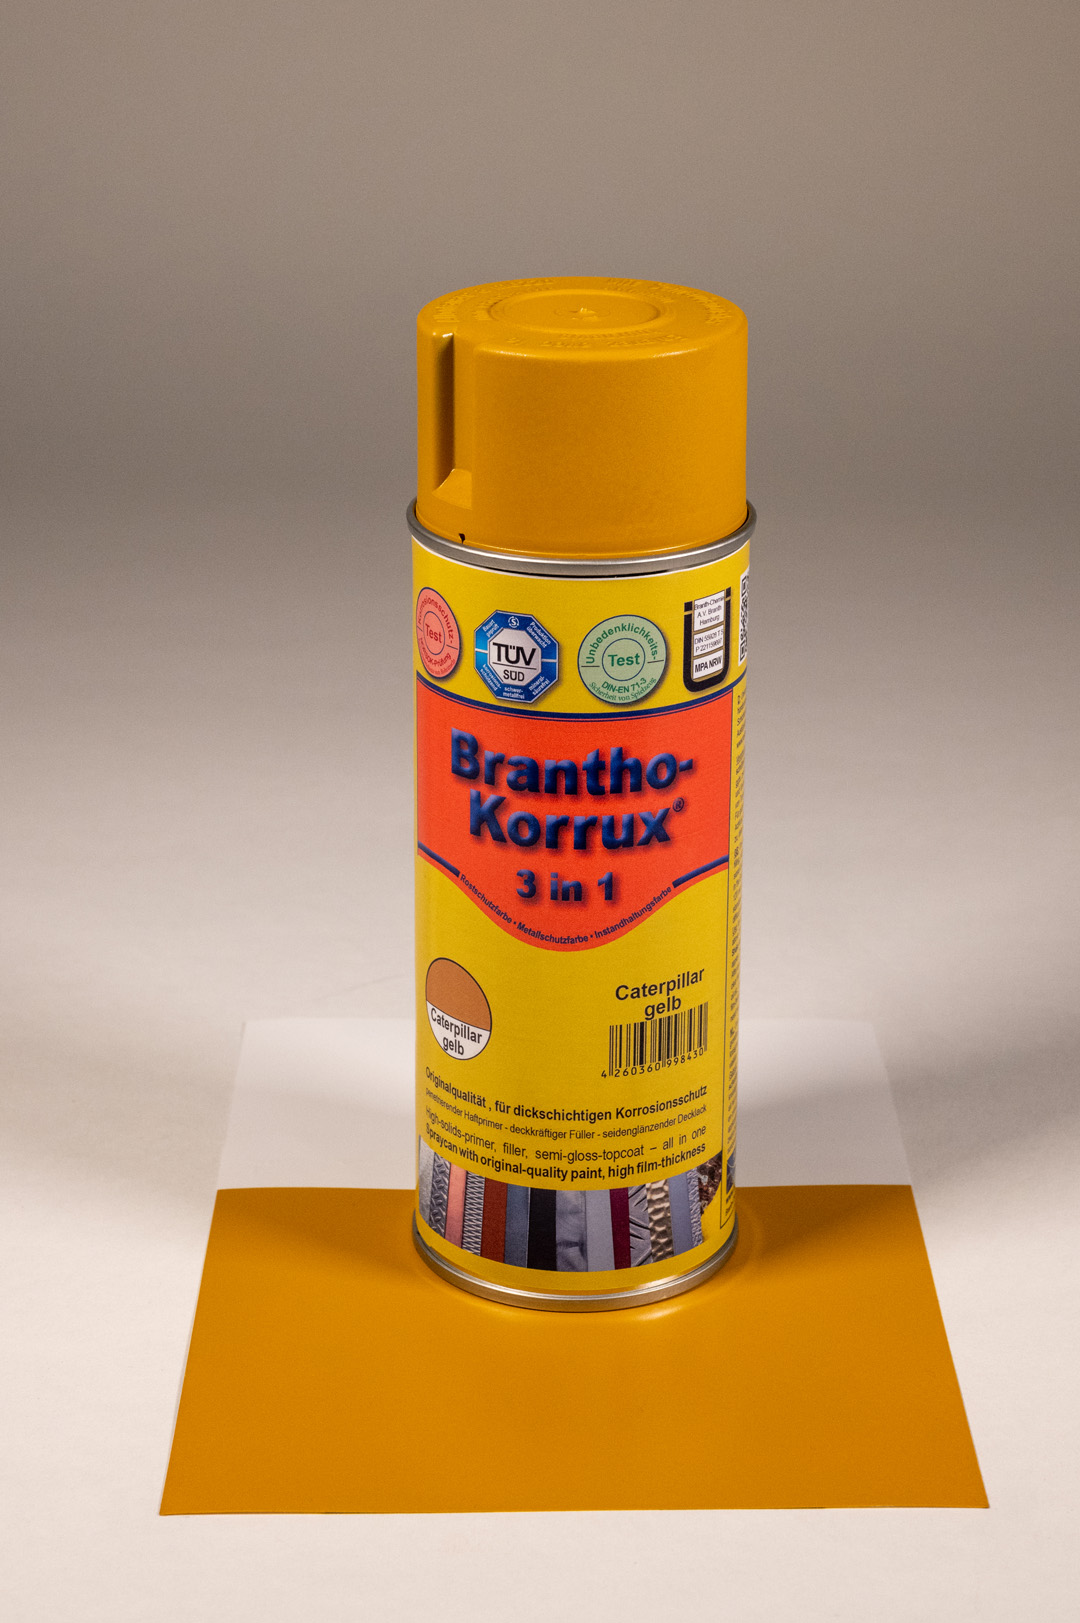 Brantho-Korrux "3 in 1"-Komfortdose  caterpillar-gelb 400 ml